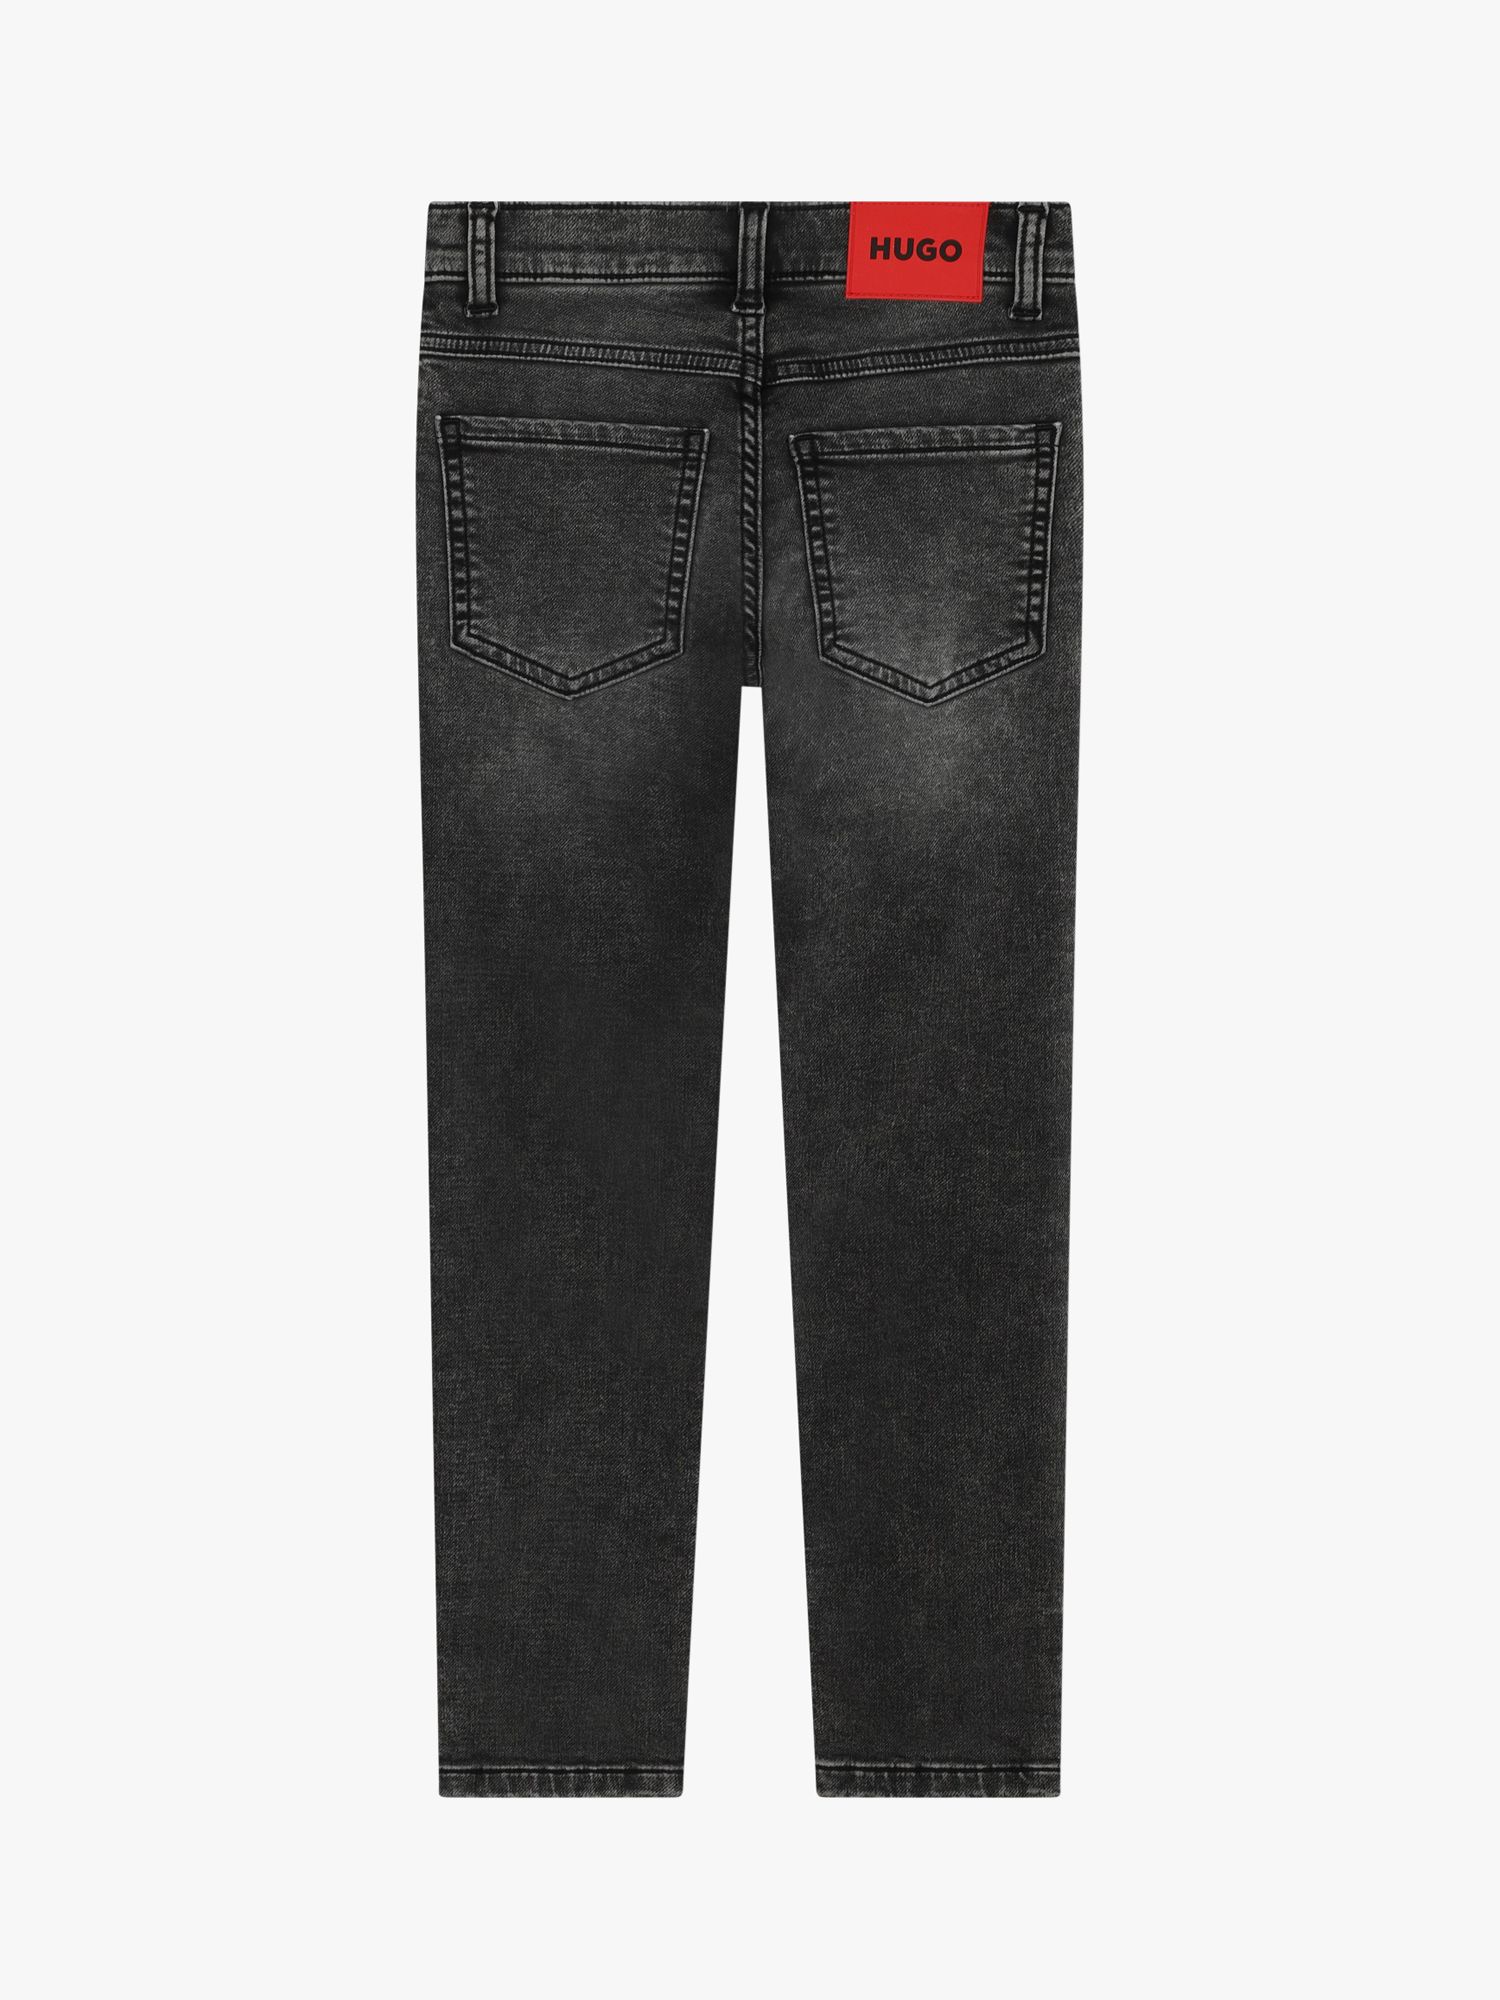 Buy HUGO Kids' Slim Fit Jeans, Black Online at johnlewis.com